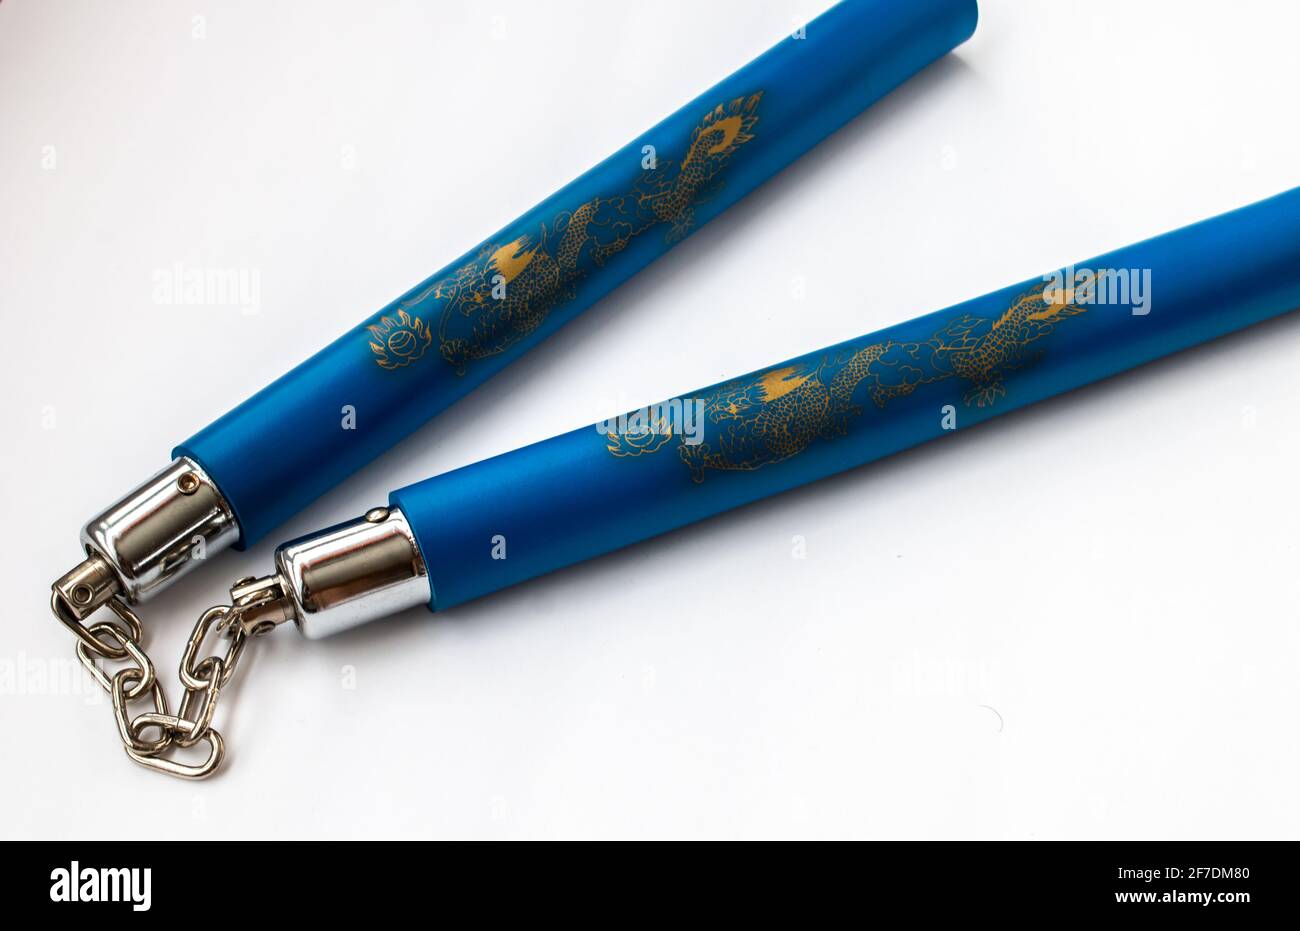 Cierre de palos de karate, o punchuks, que se mantienen juntos por una cadena de metal y decorados con dragones de oro sobre espuma protectora azul. Foto de stock